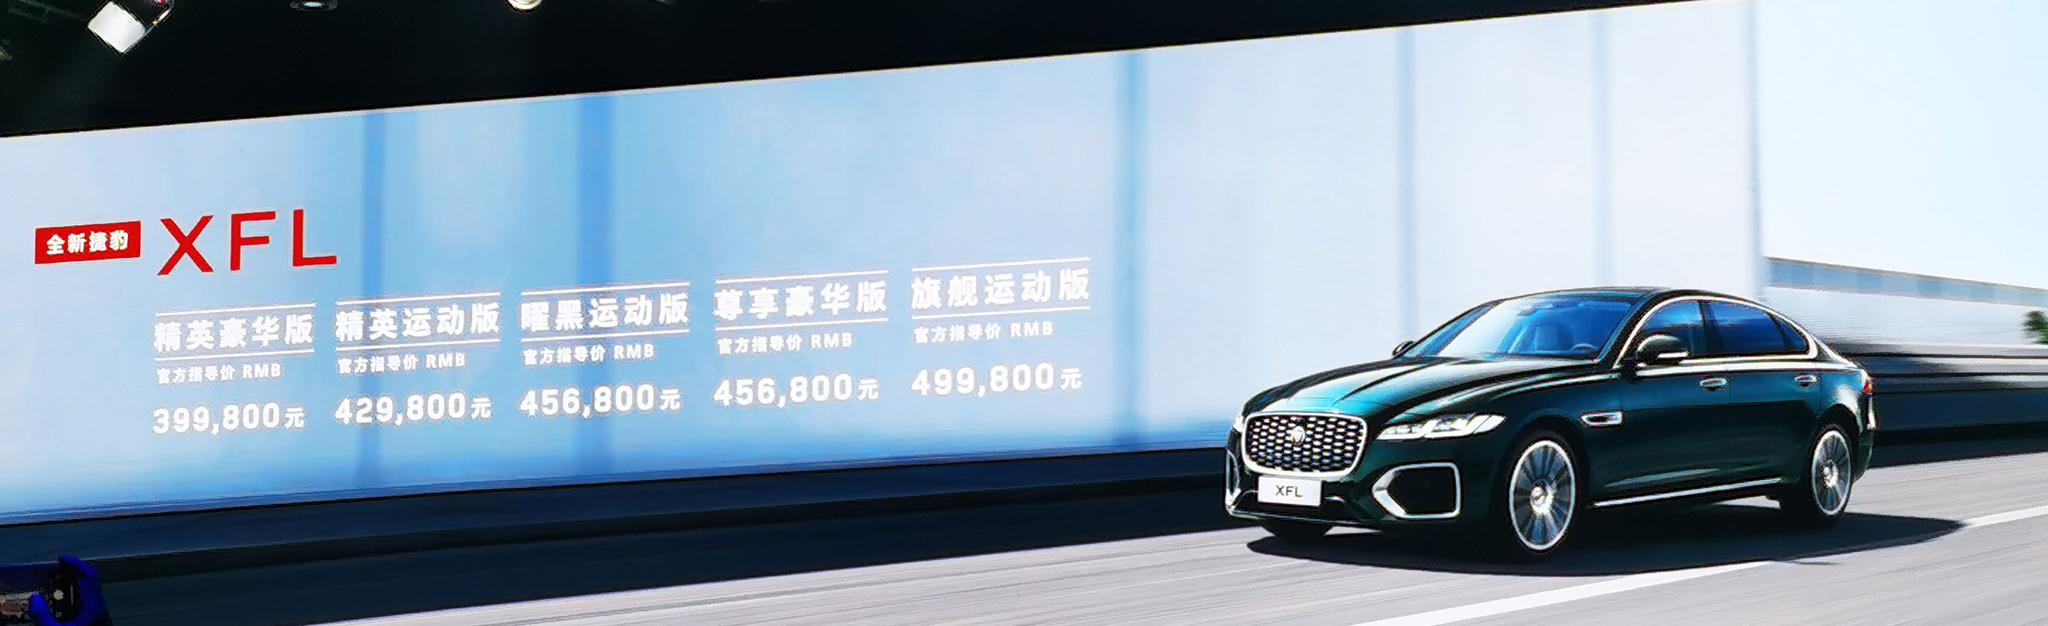 全新捷豹XFL正式上市 售价39.98万起/推5款车型